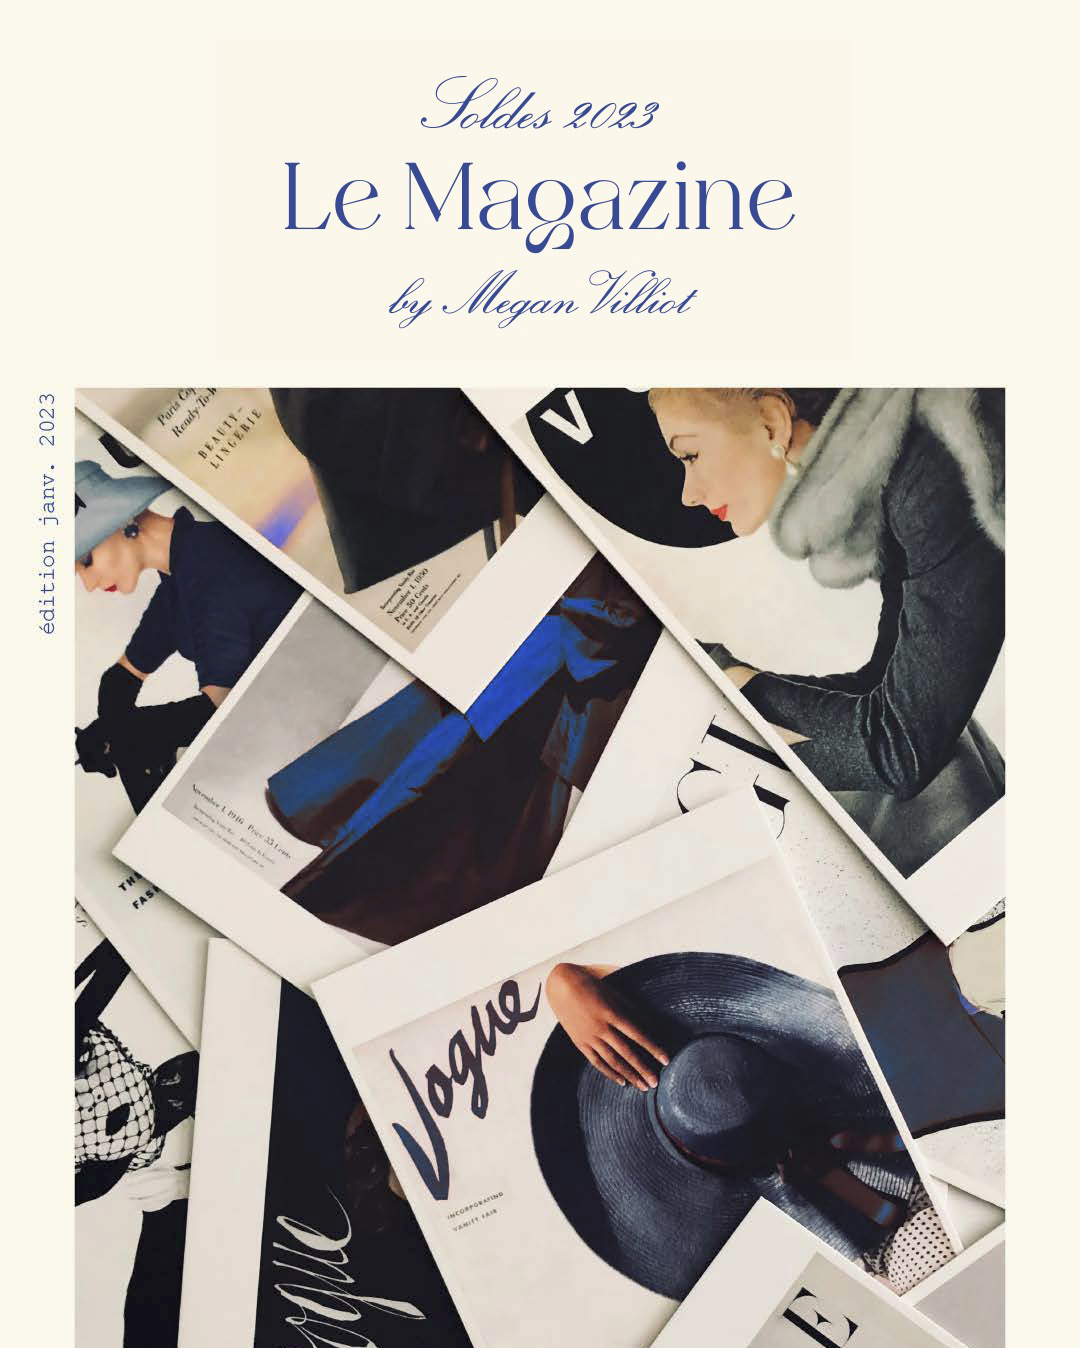 Le Magazine by Megan Villiot – Janvier